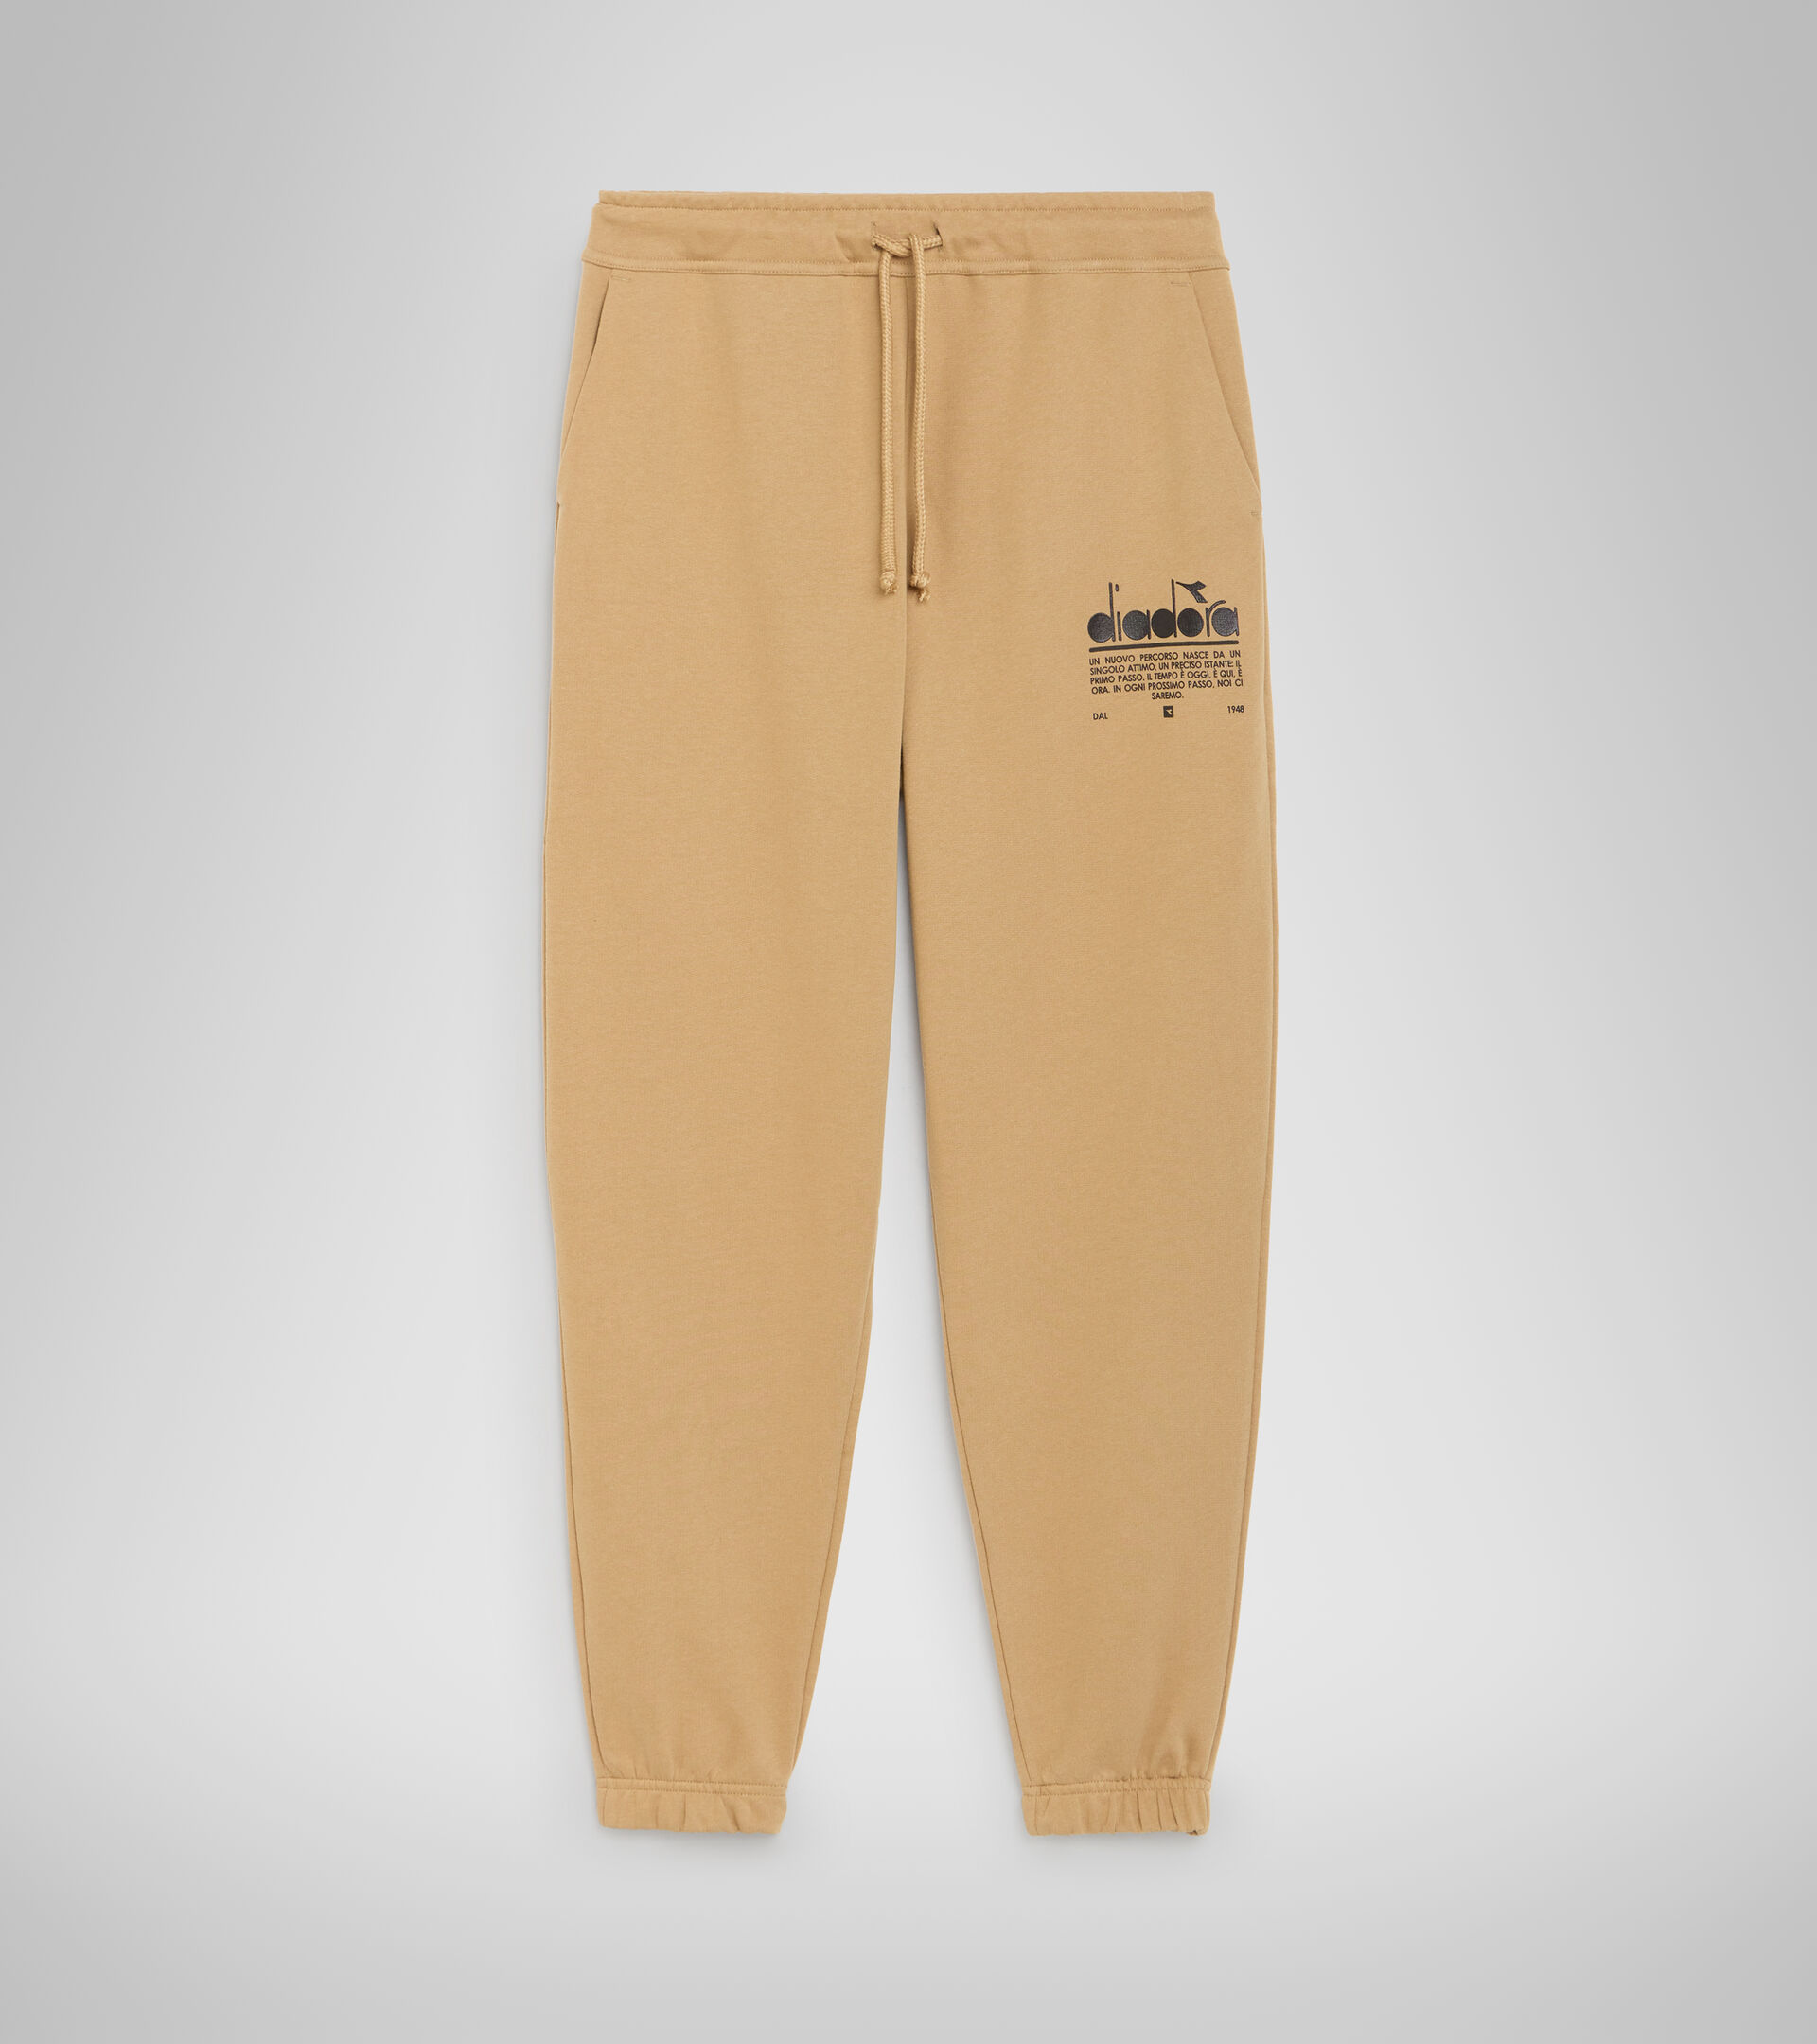 Cotton sports trousers - Unisex PANT MANIFESTO BEIGE TAN - Diadora